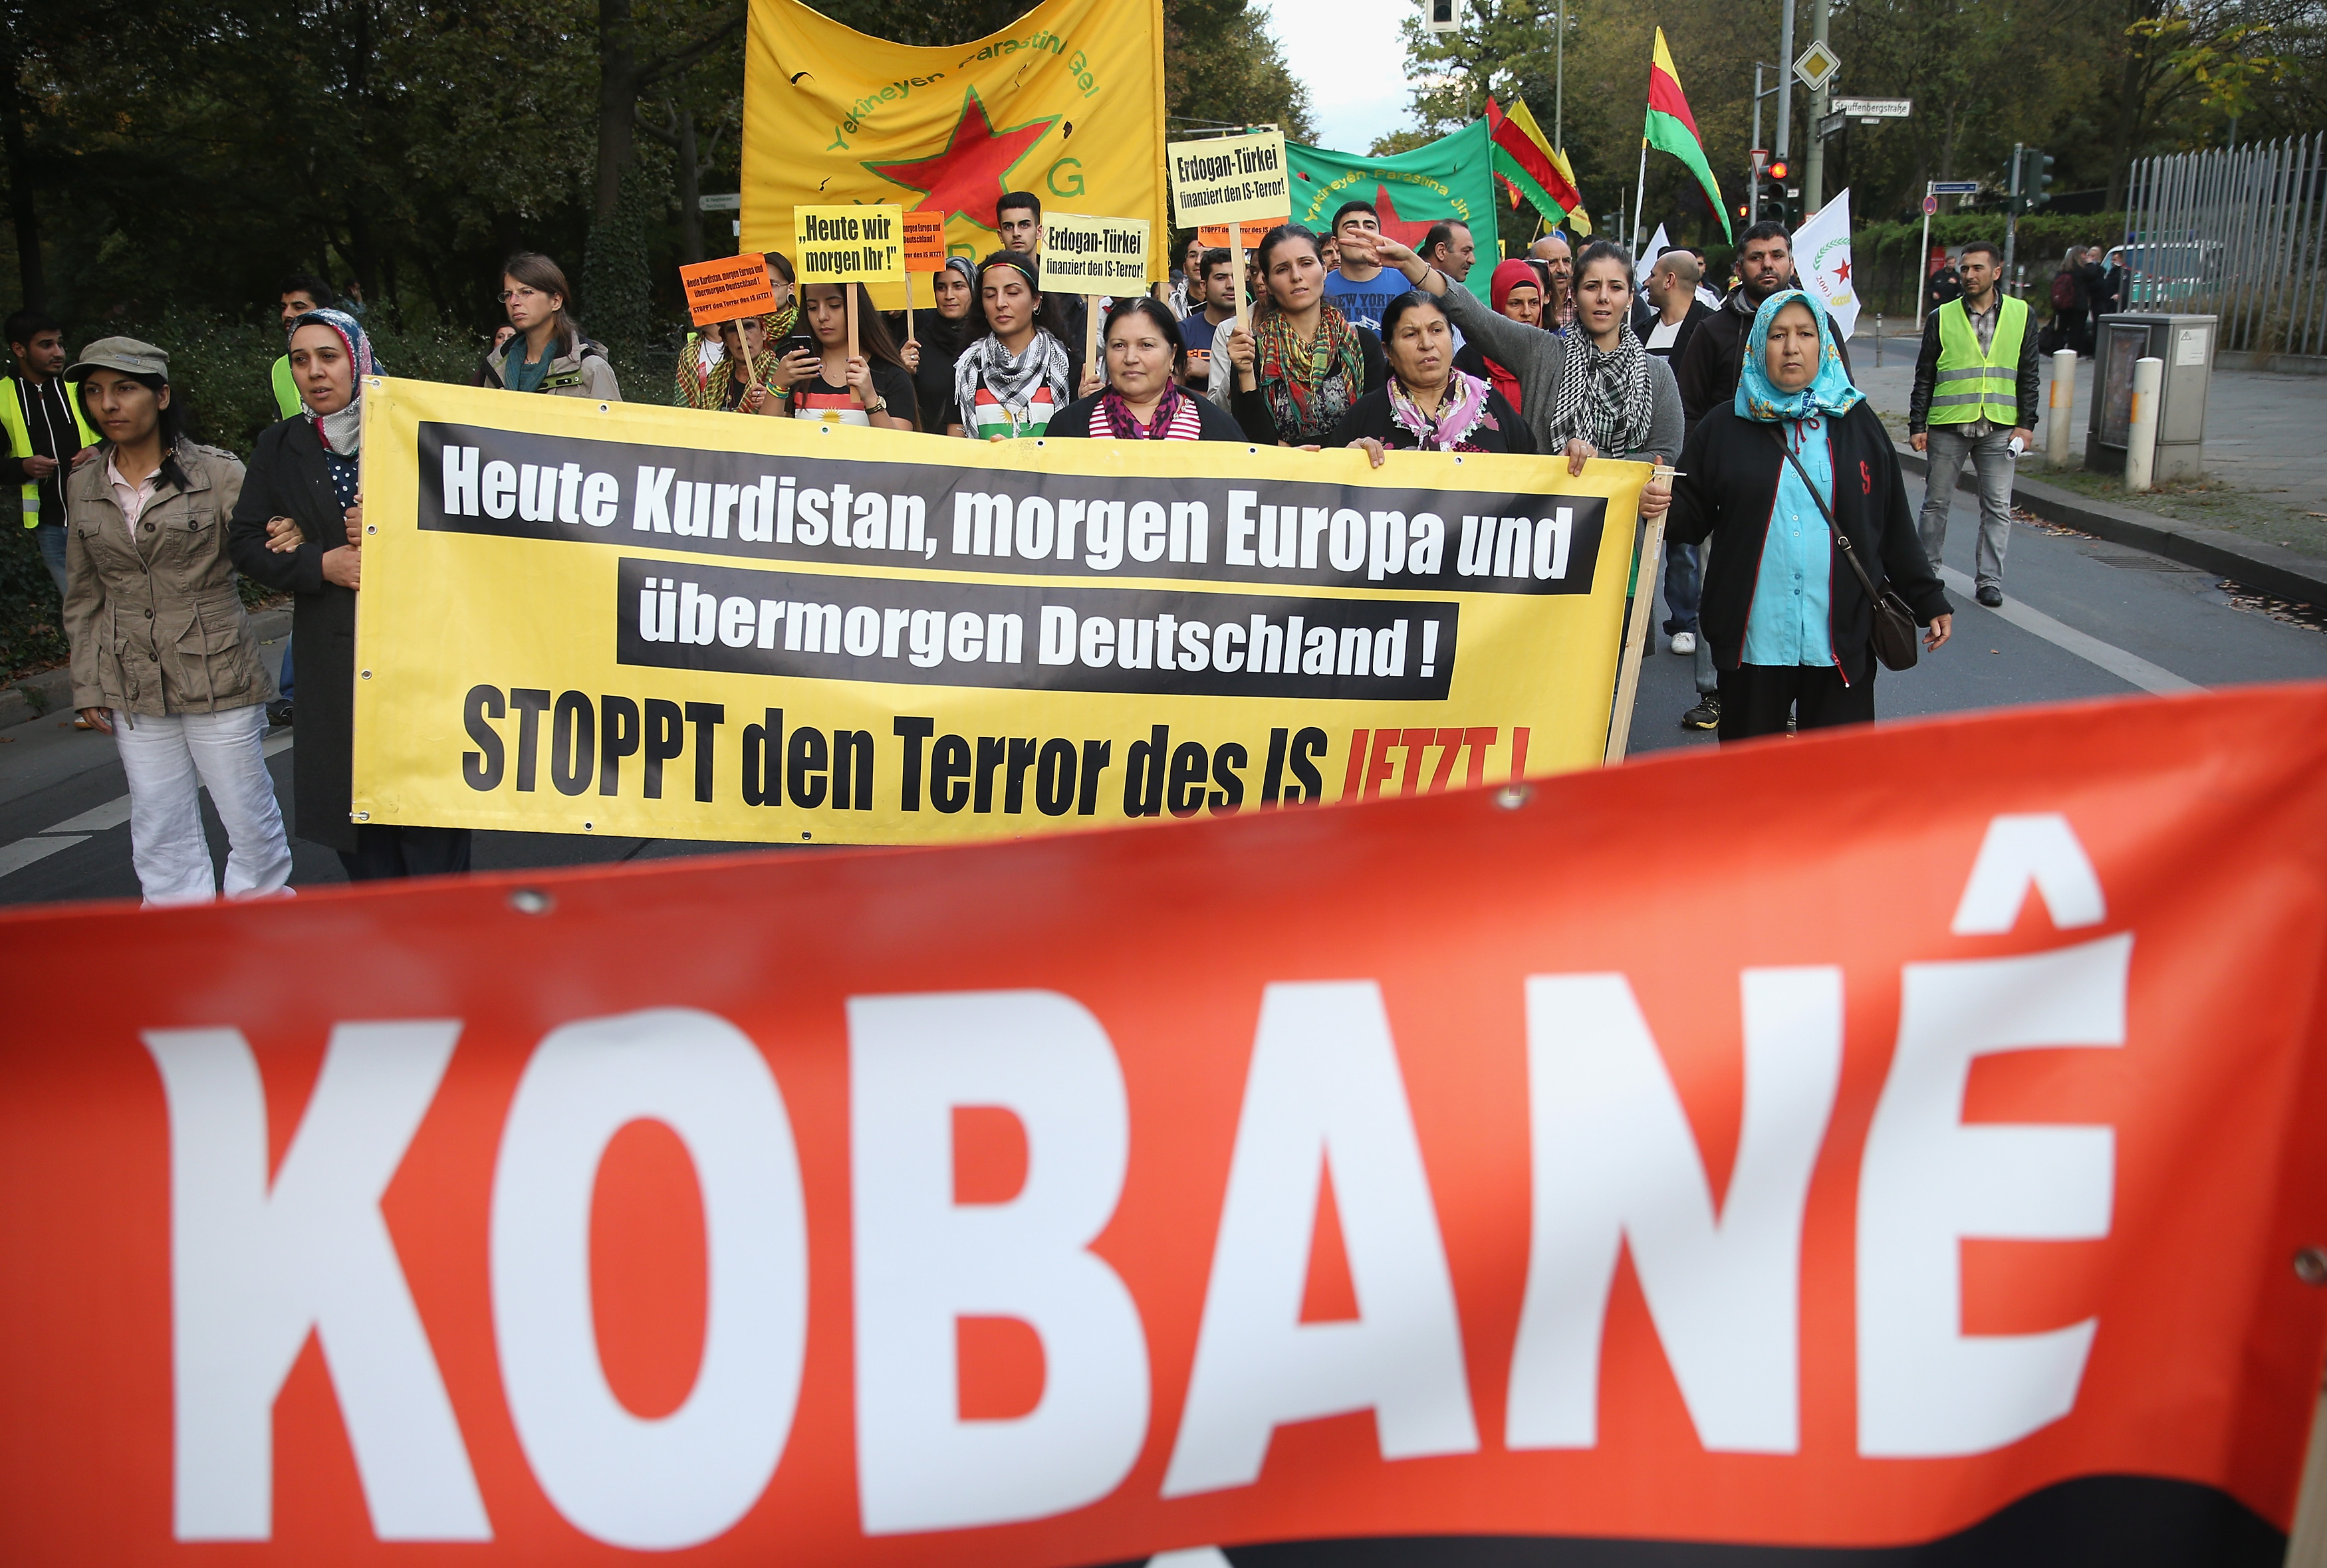 Gewalt bei Kurden-Demo in NRW: Flaschen fliegen, Straße blockiert – 77 Teilnehmer in Gewahrsam